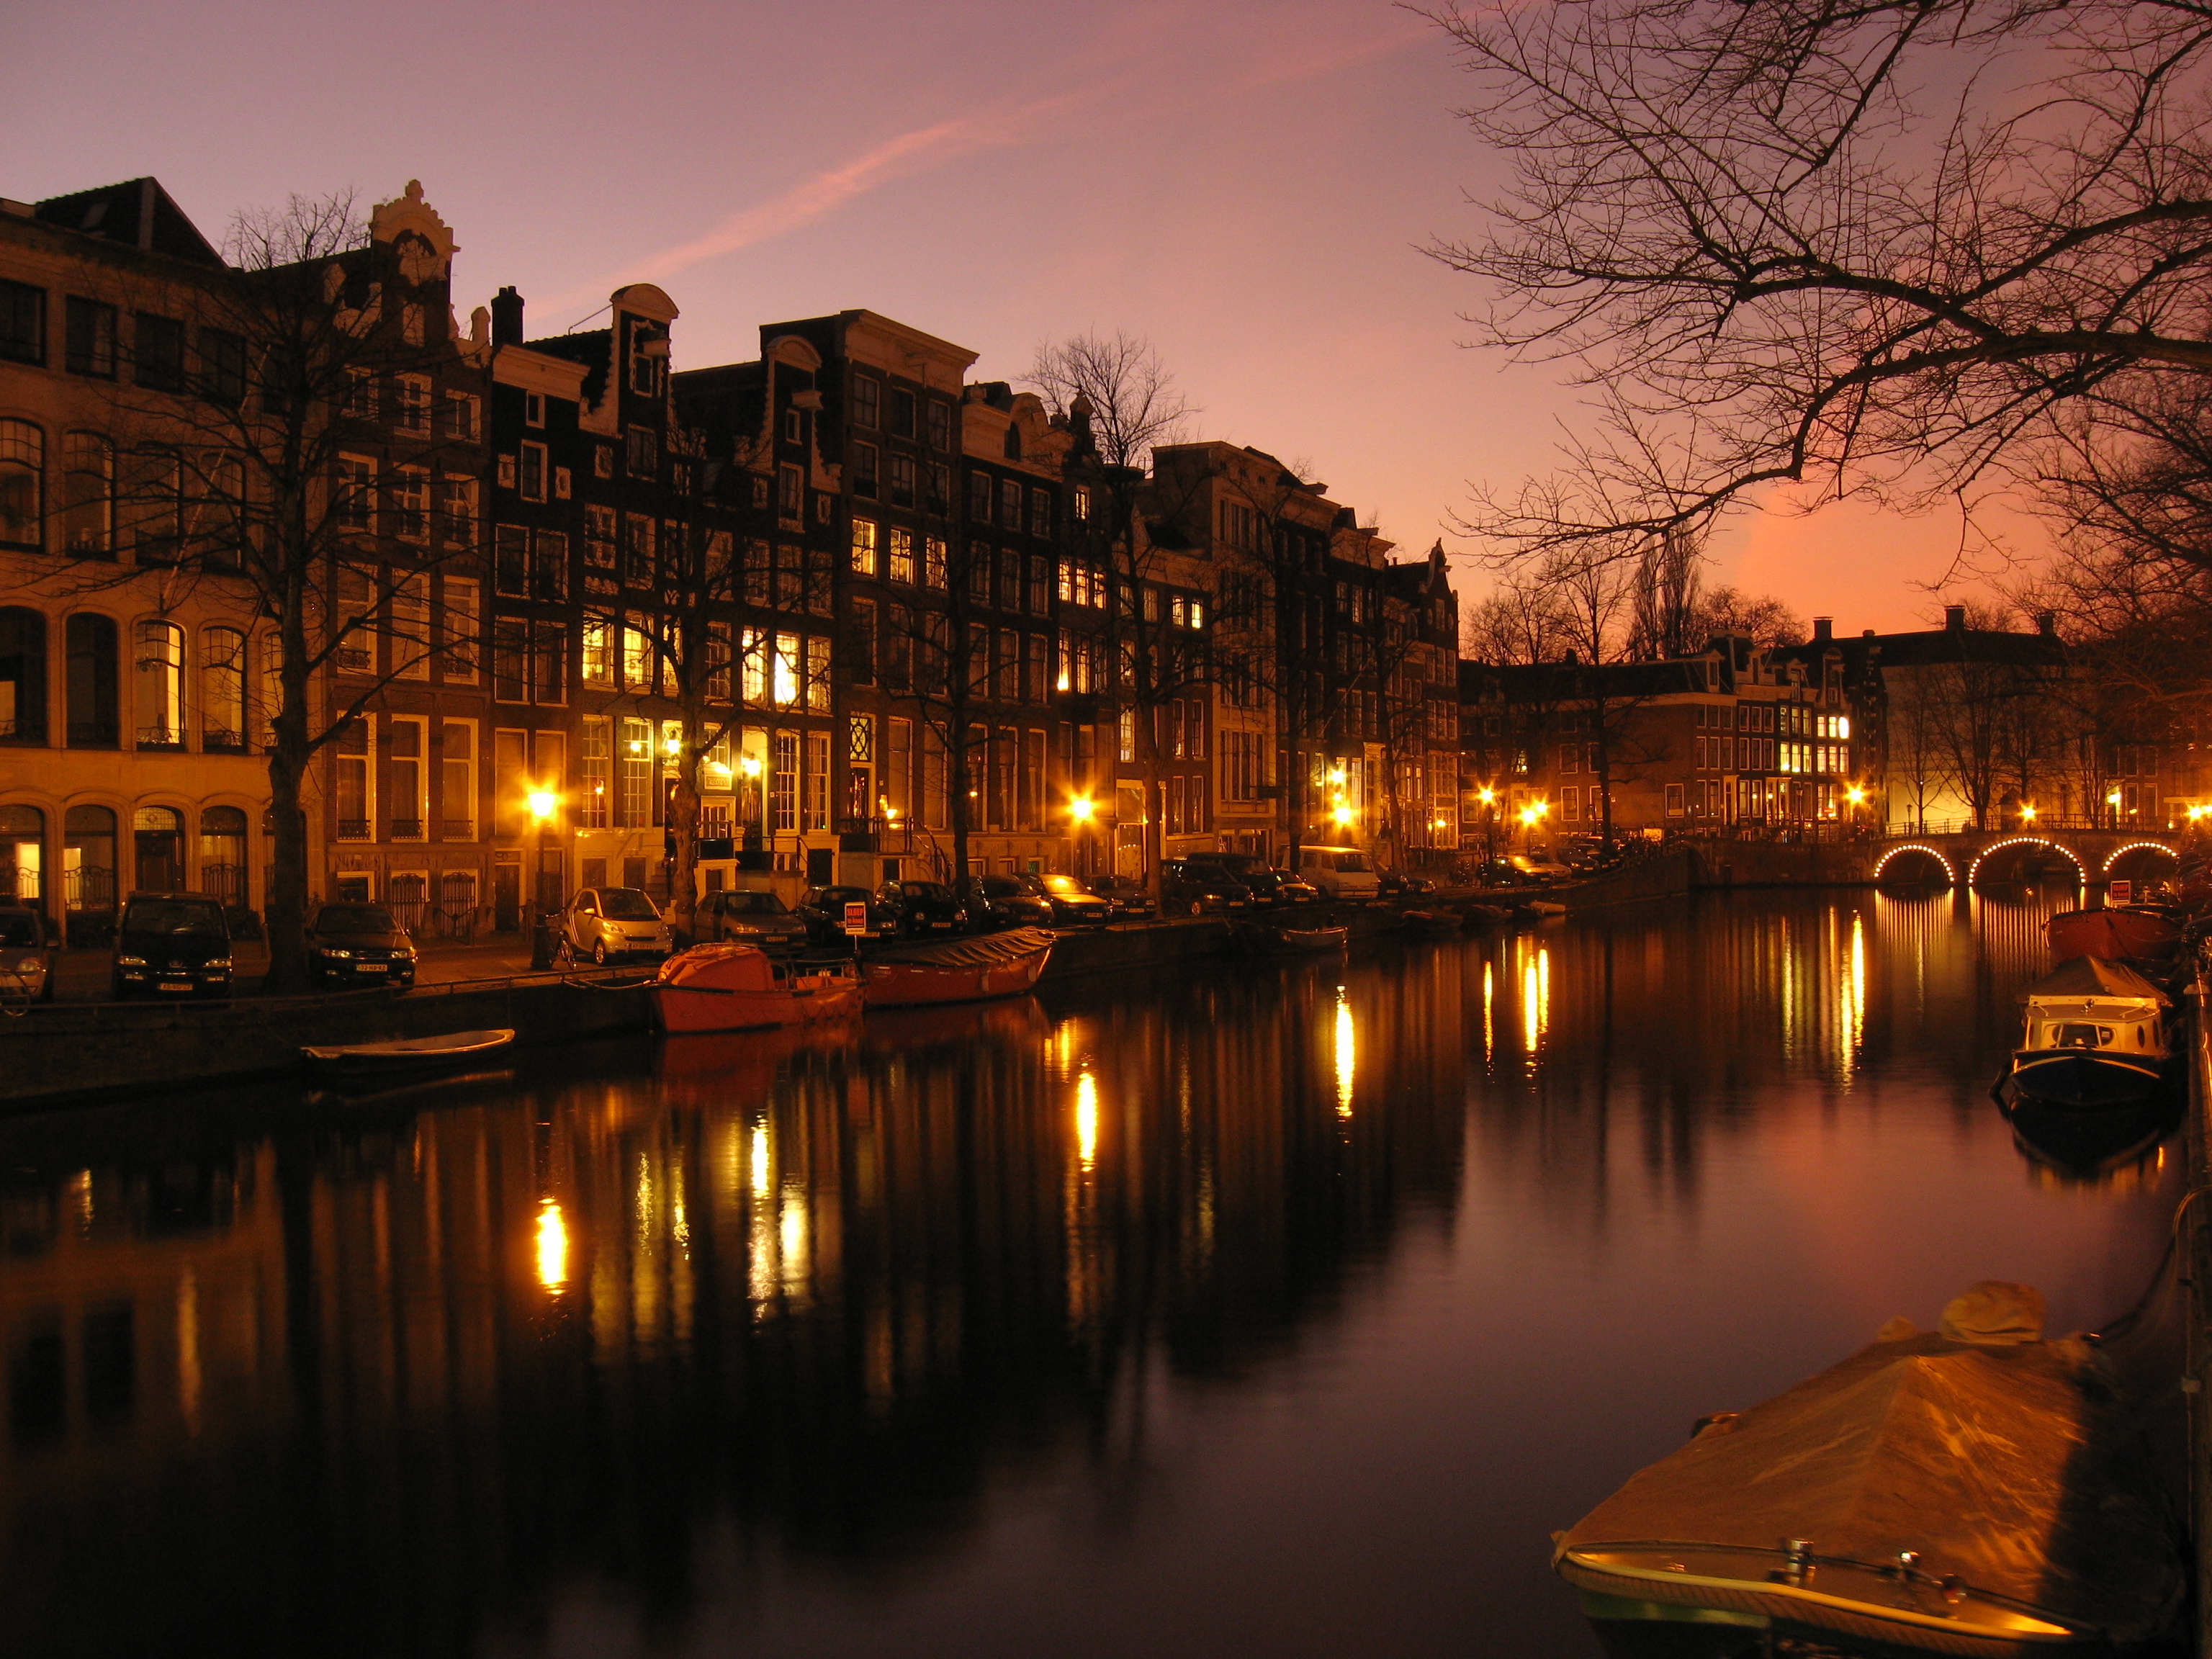 вода, ночь, огни, архитектура, дома, корабли, Европа, Голландия, Амстердам, Голландский, транспортные средства, реки, отражения, Нидерланды, города - обои на рабочий стол